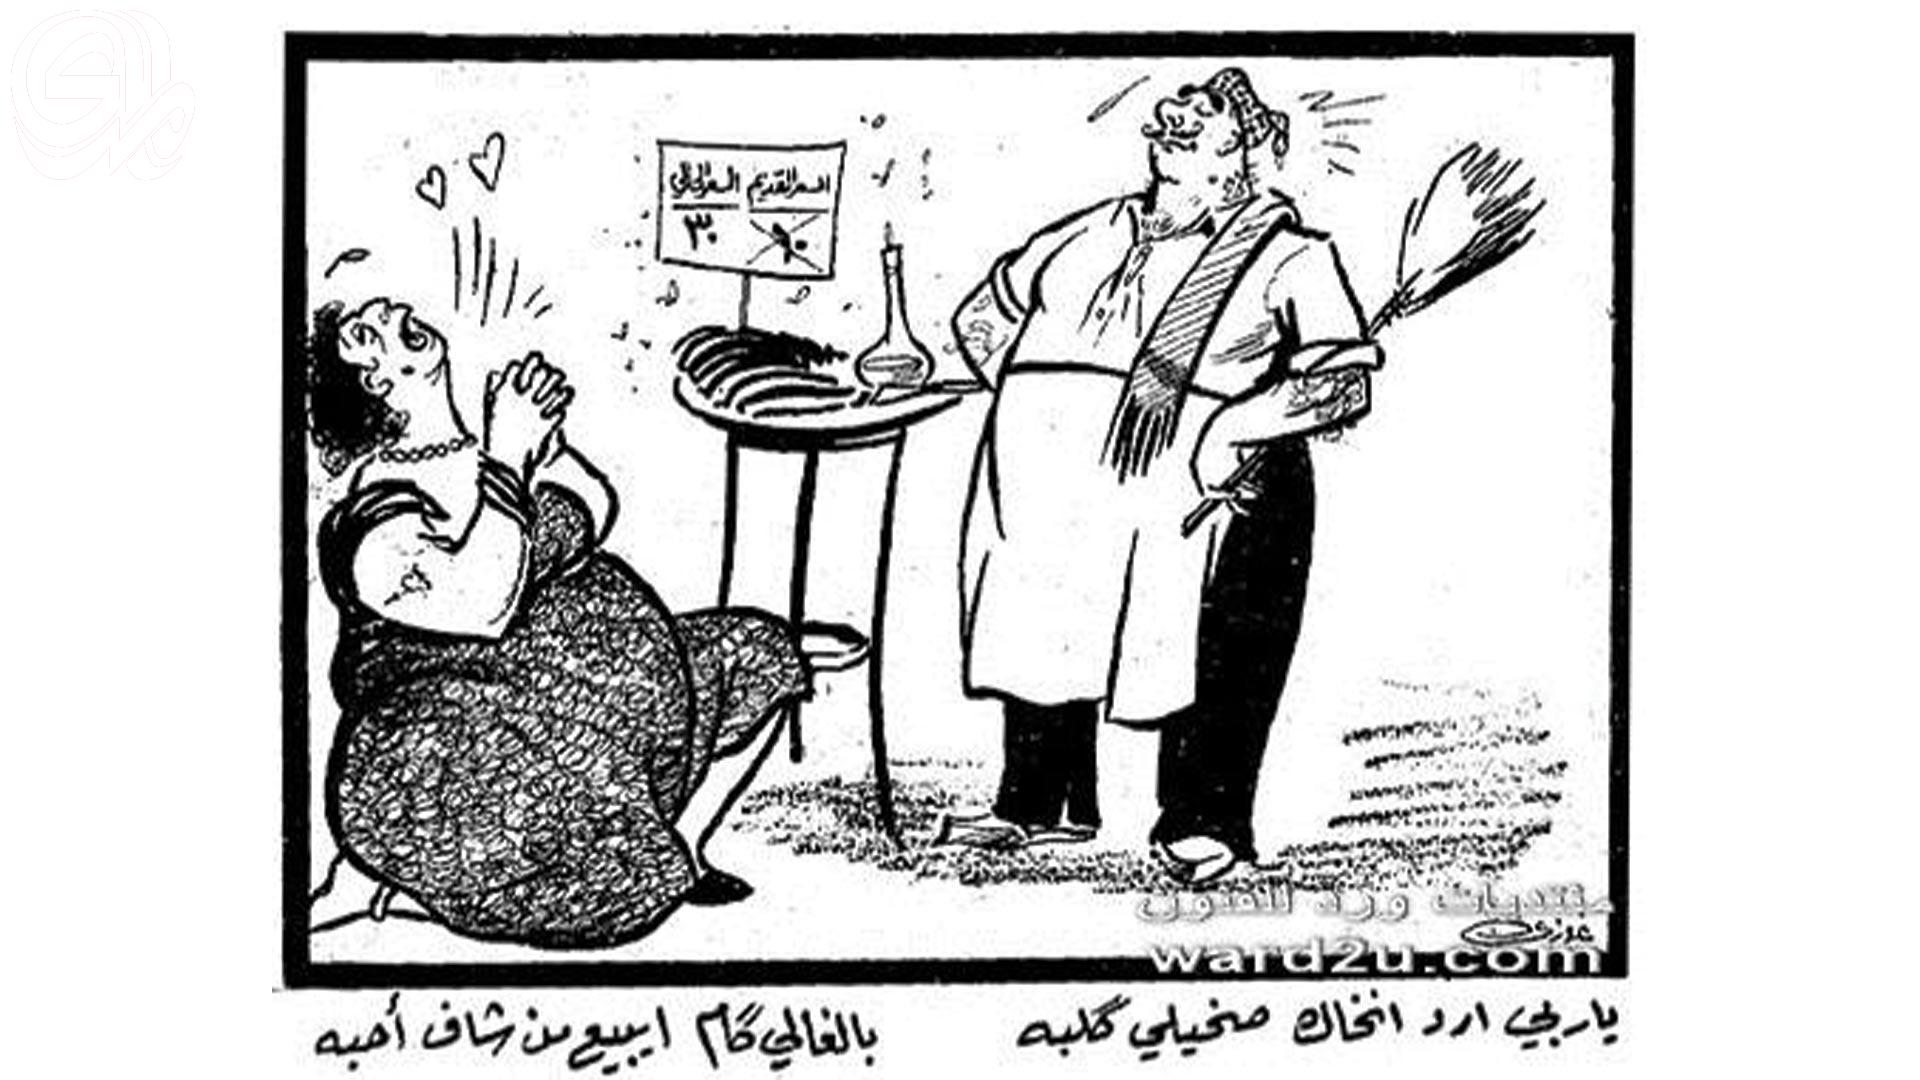 إستذكار رحيل رسام الكاريكاتير الشعبي غازي الخطاط